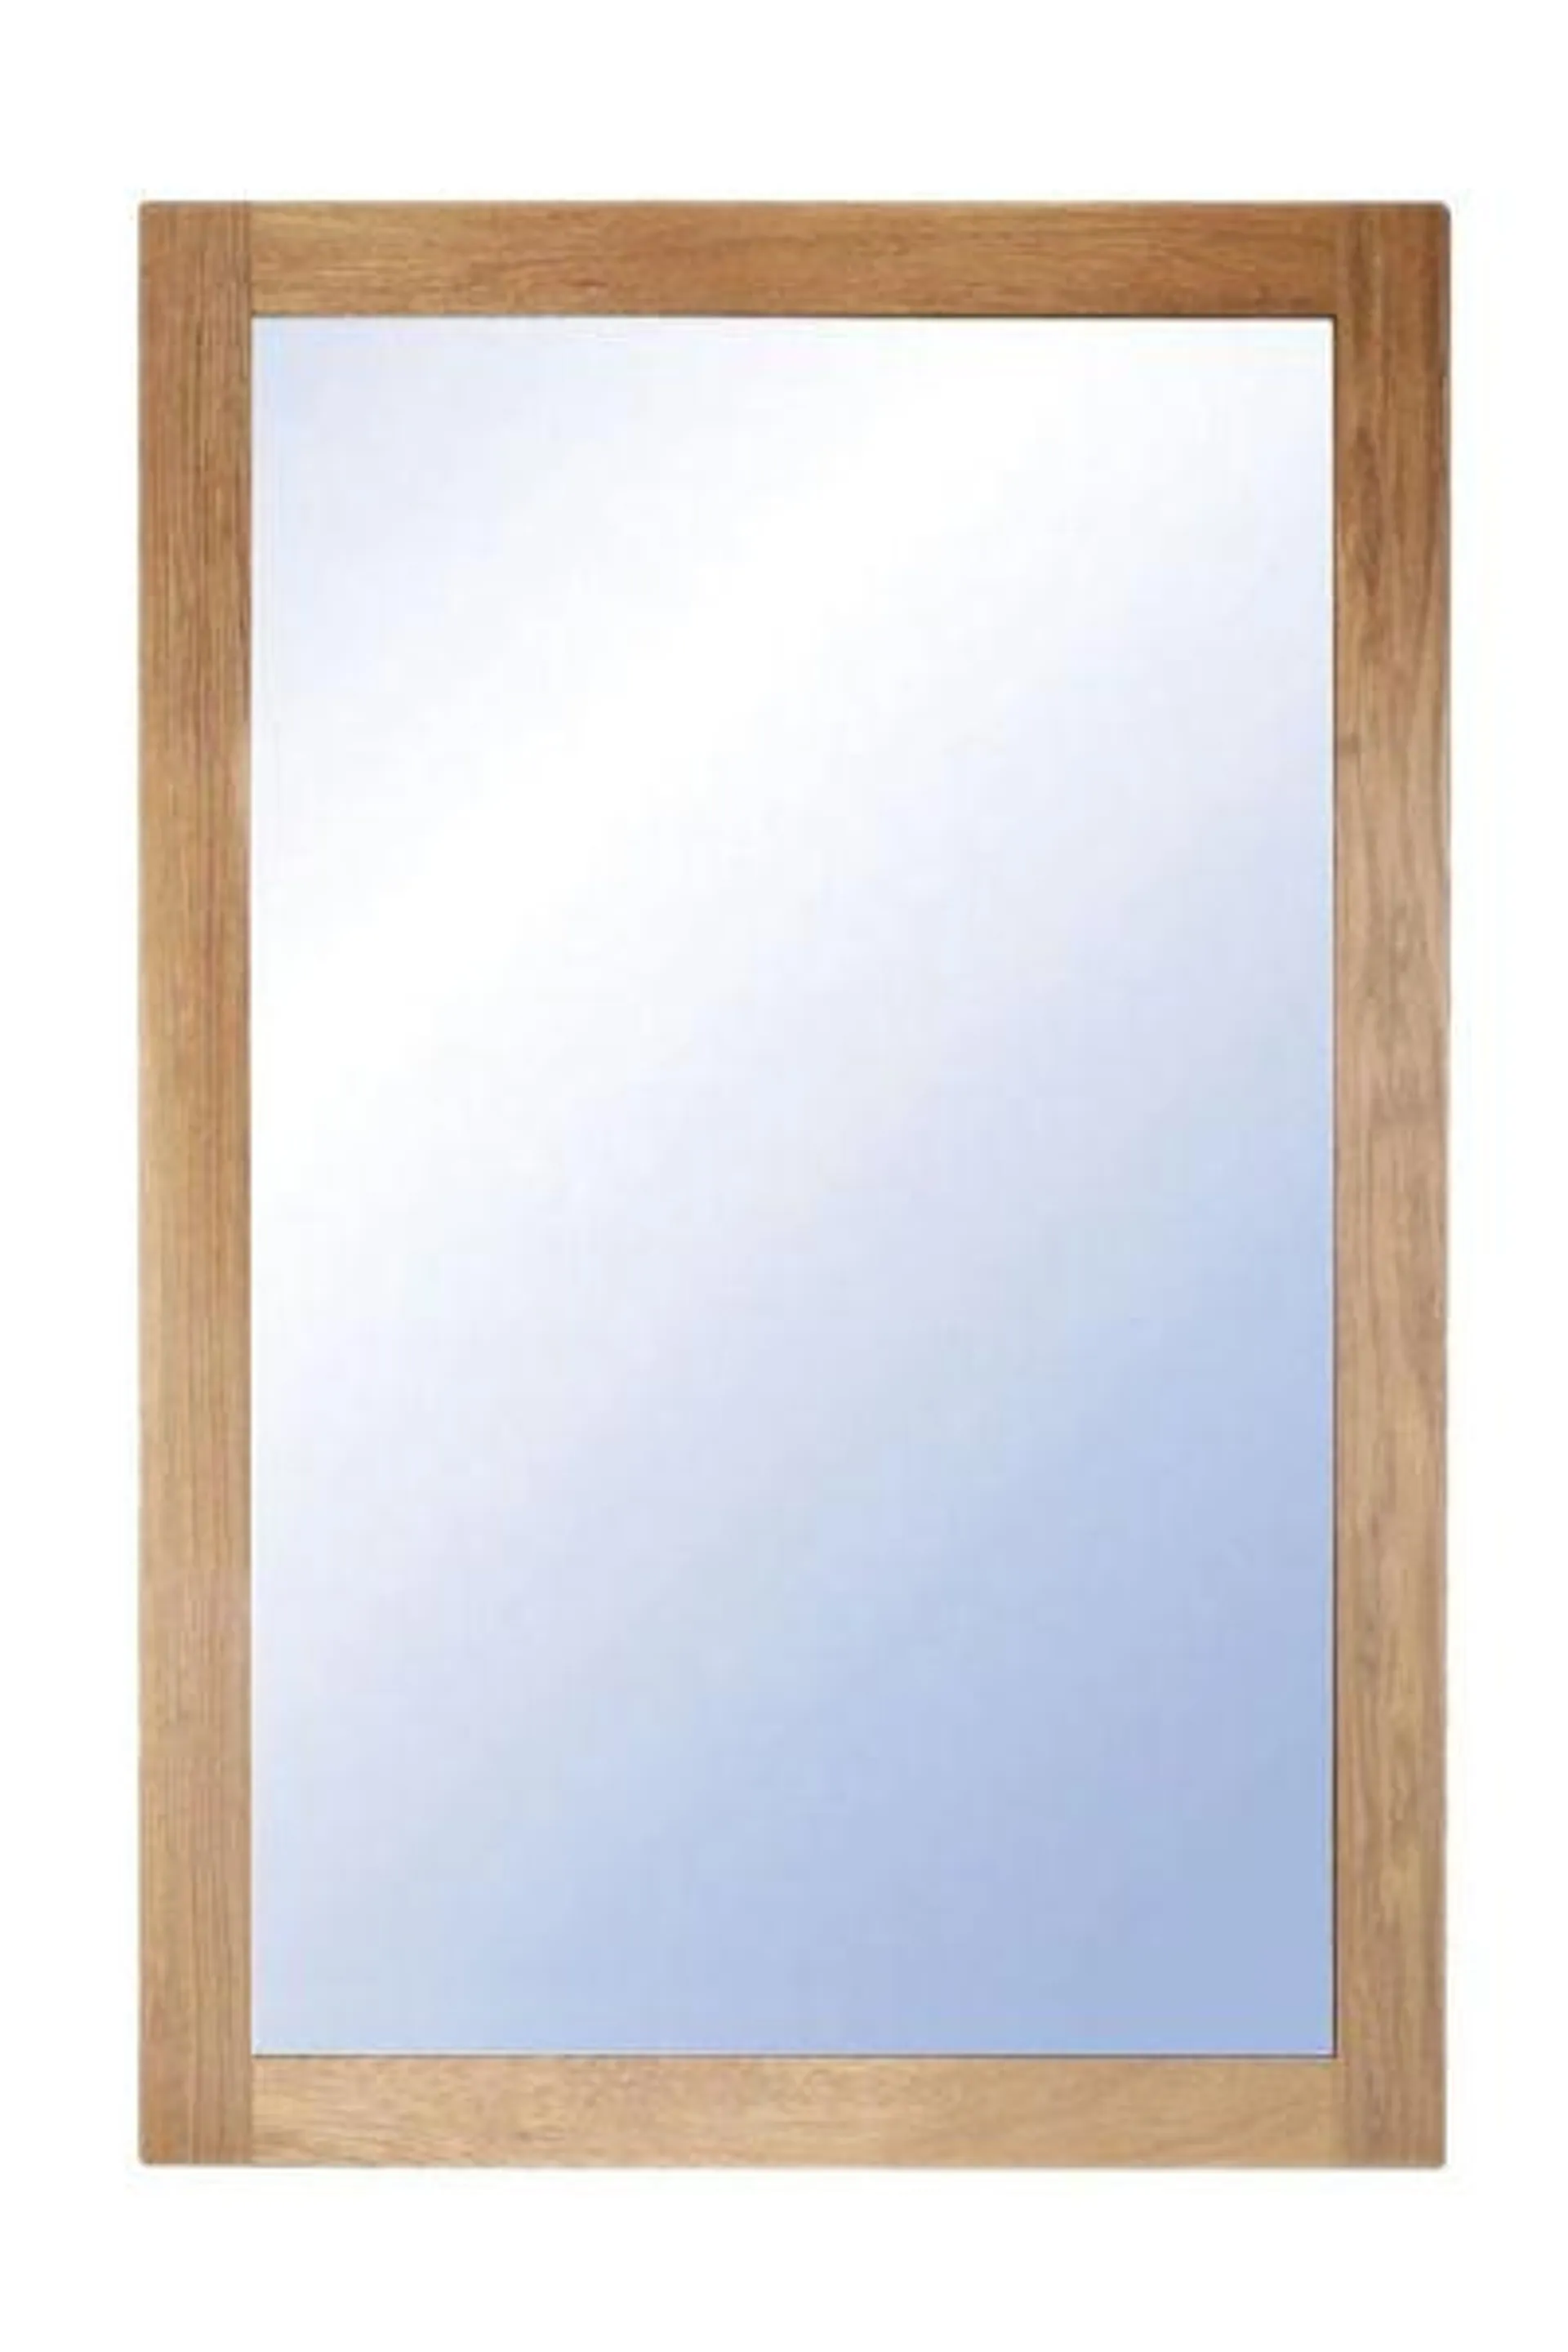 NOVA Spegel 90x60 oljad ek